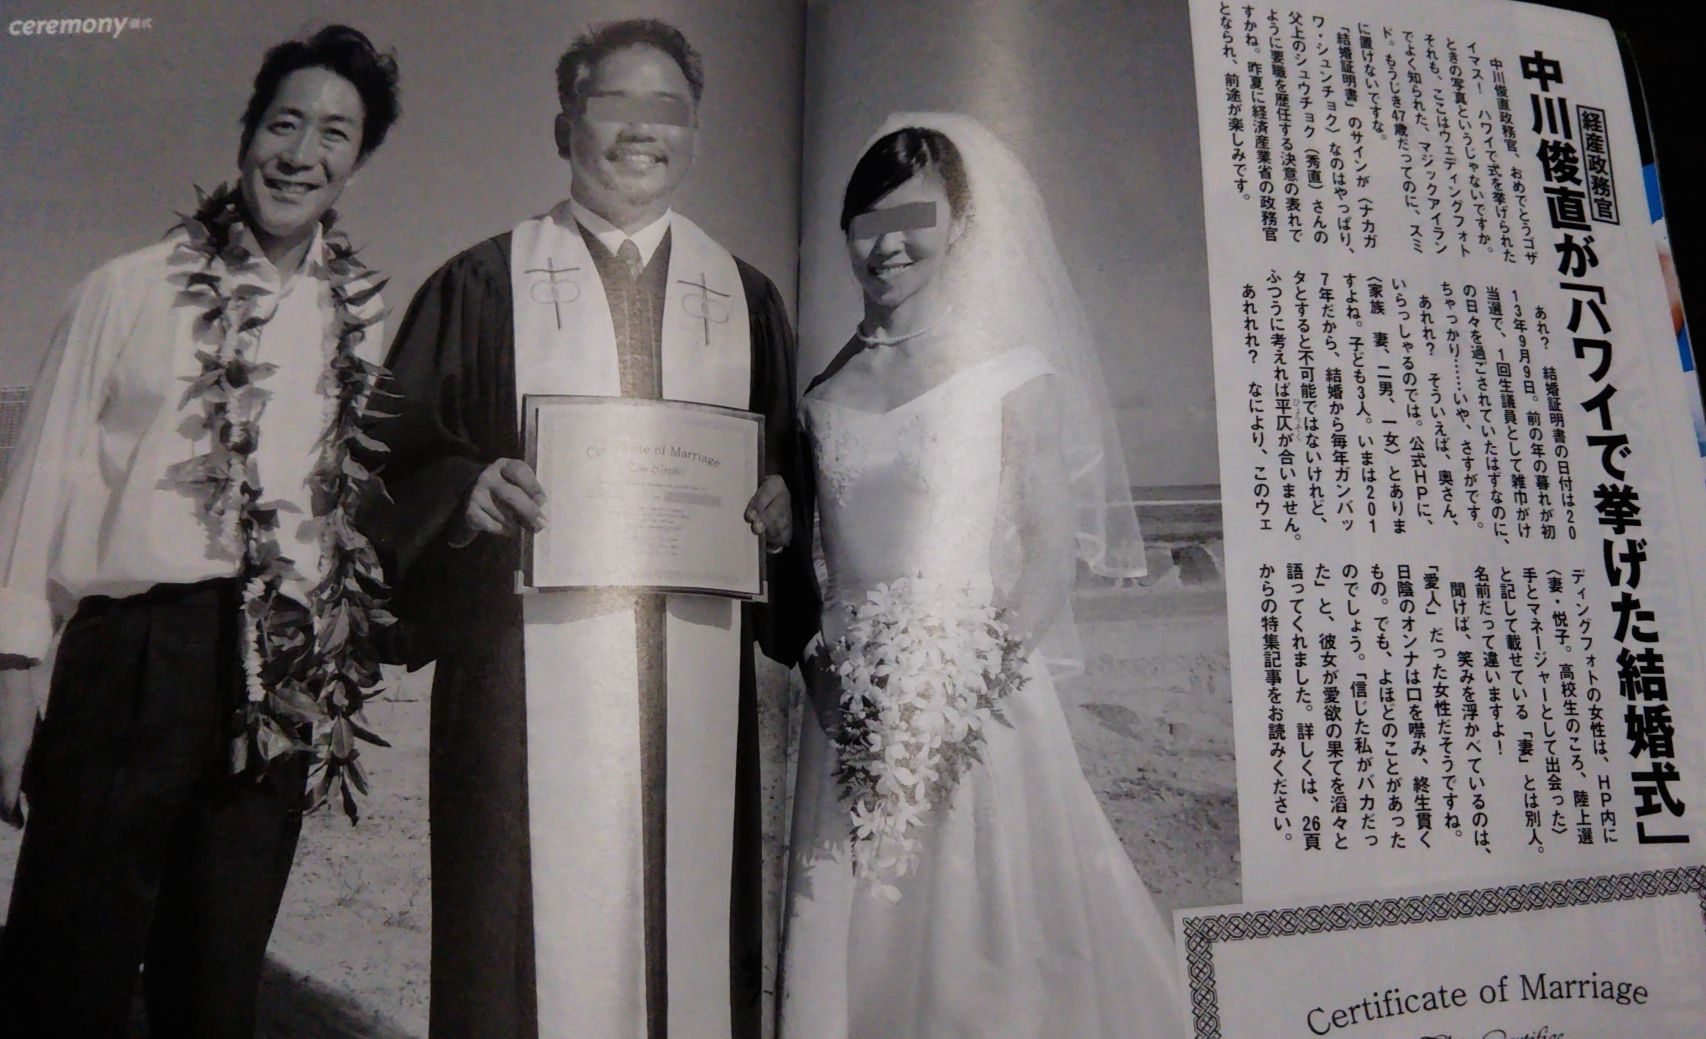 中川俊直衆院議員と愛人のハワイで挙げた結婚式